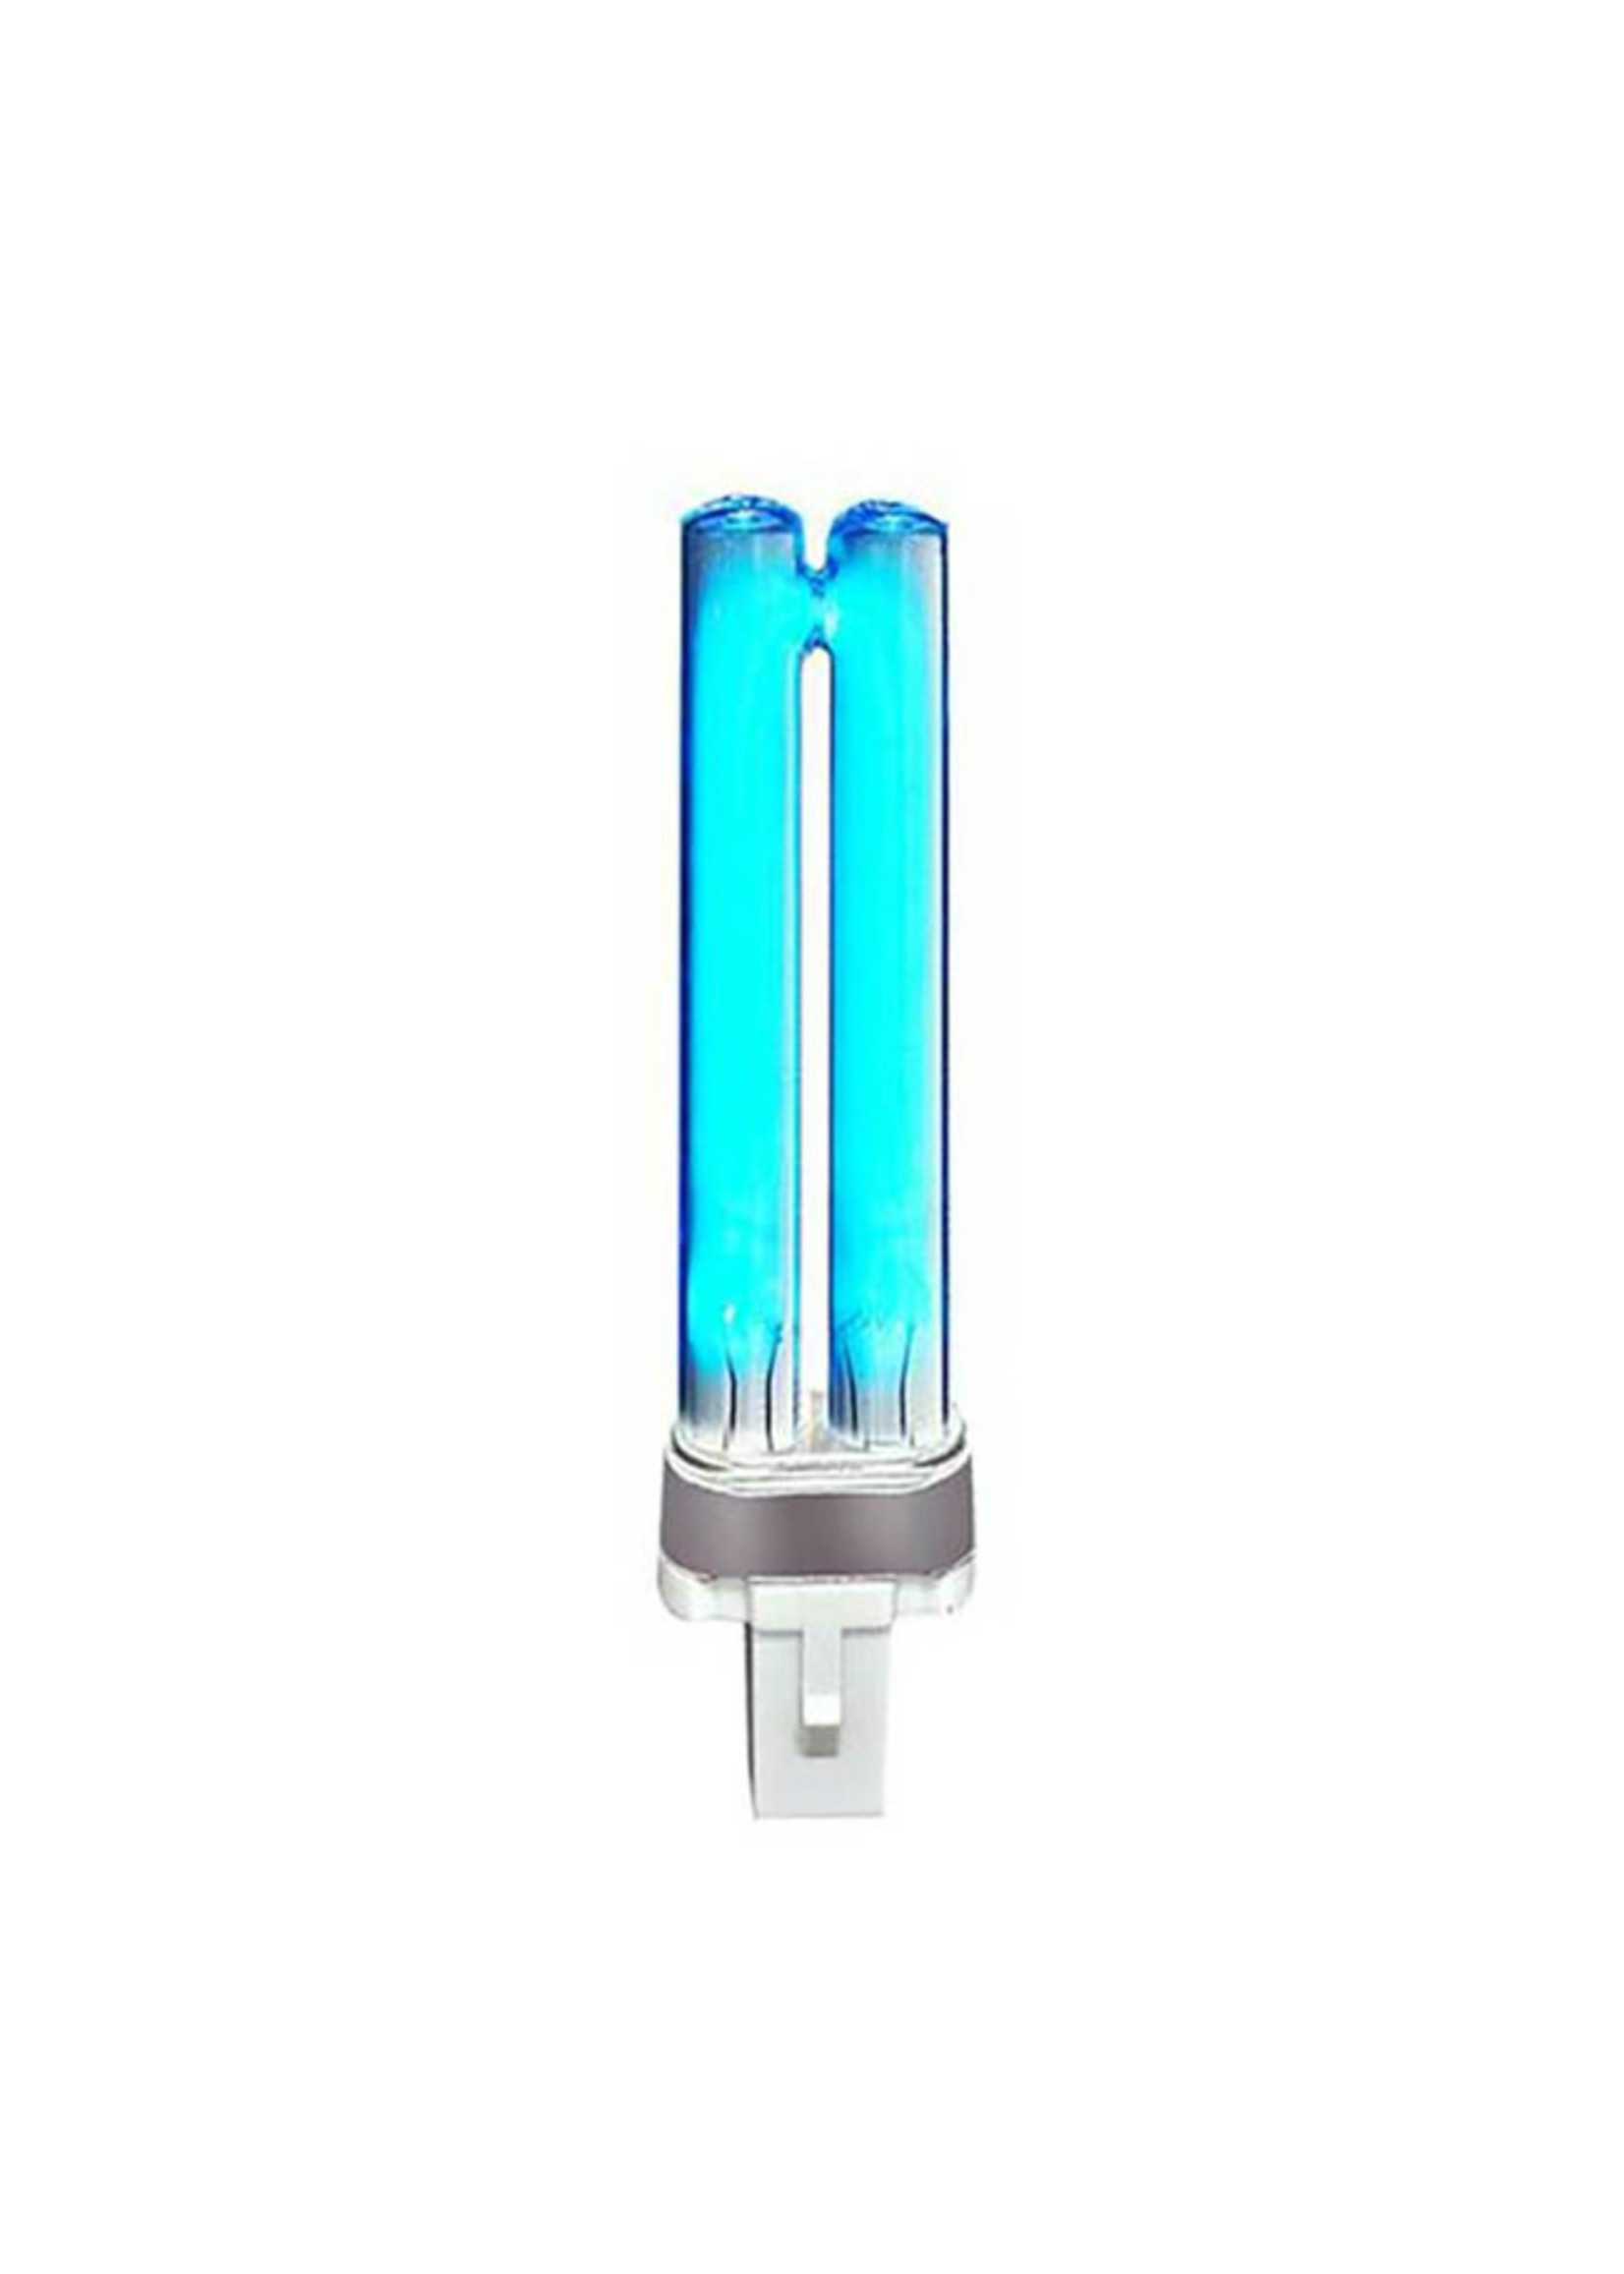 Aquatop Aquatop UV Sterilizer Replacement Bulb 13 Watt